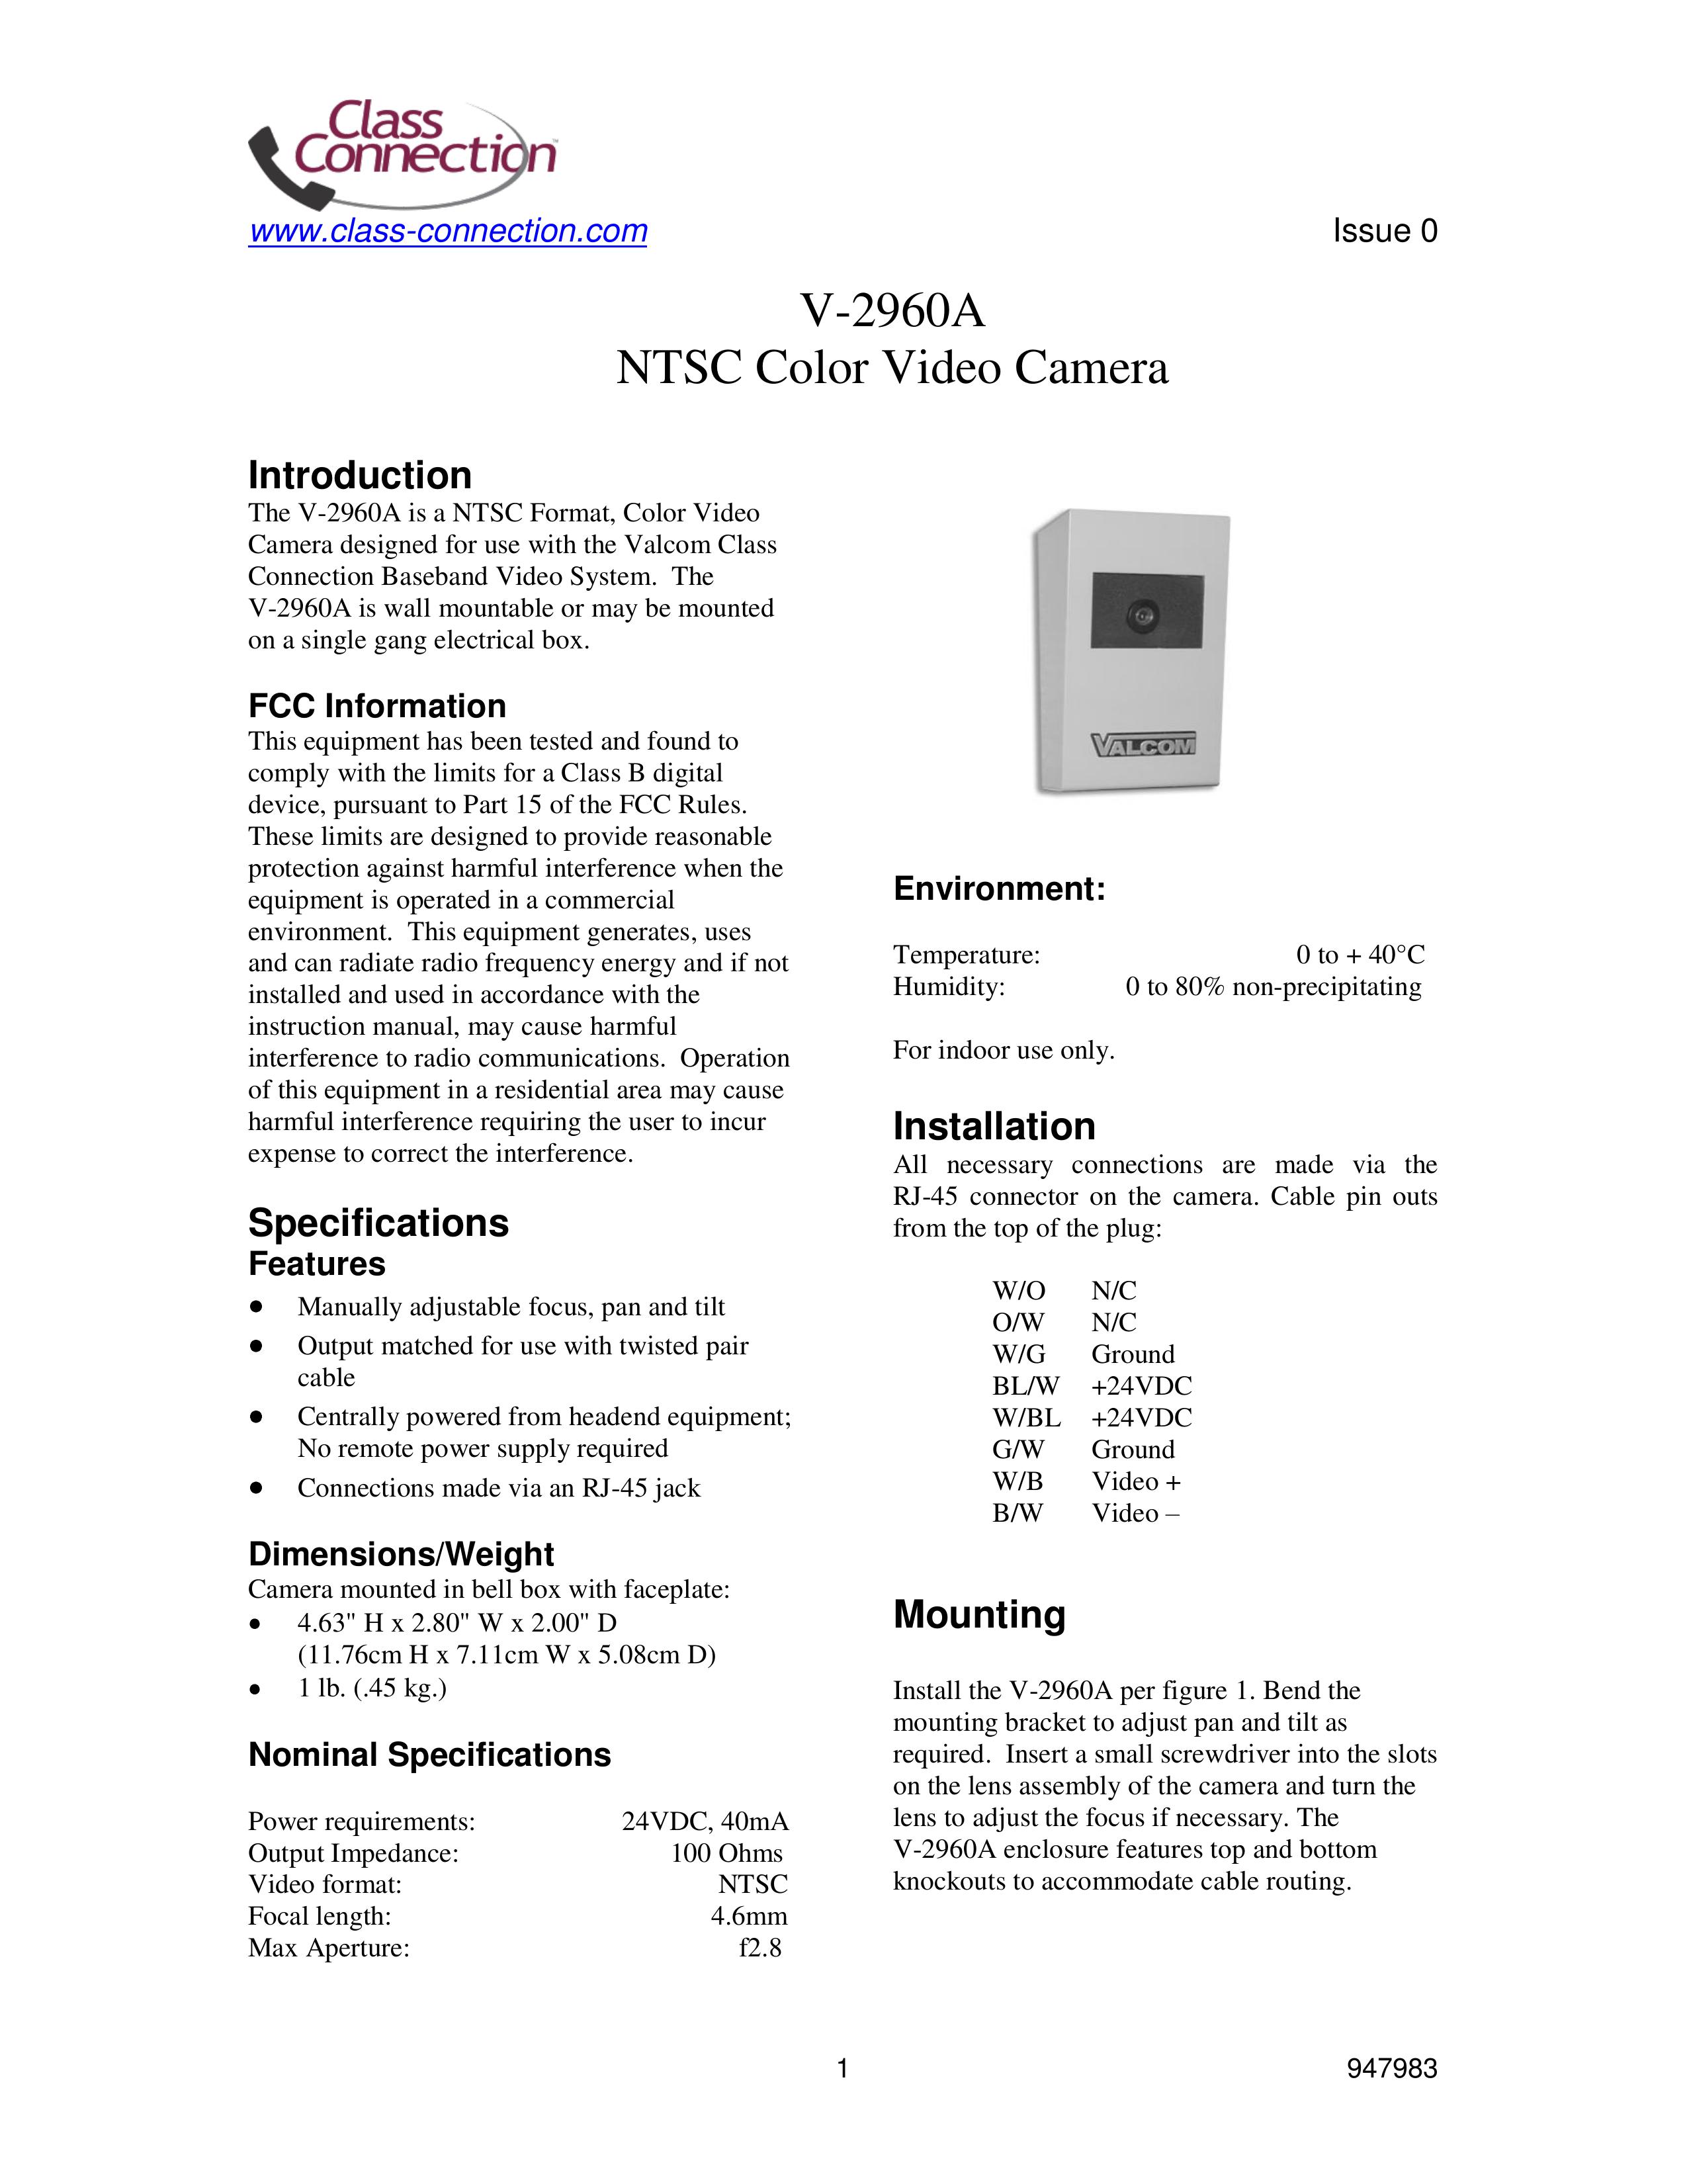 Valcom V-2960A Security Camera User Manual